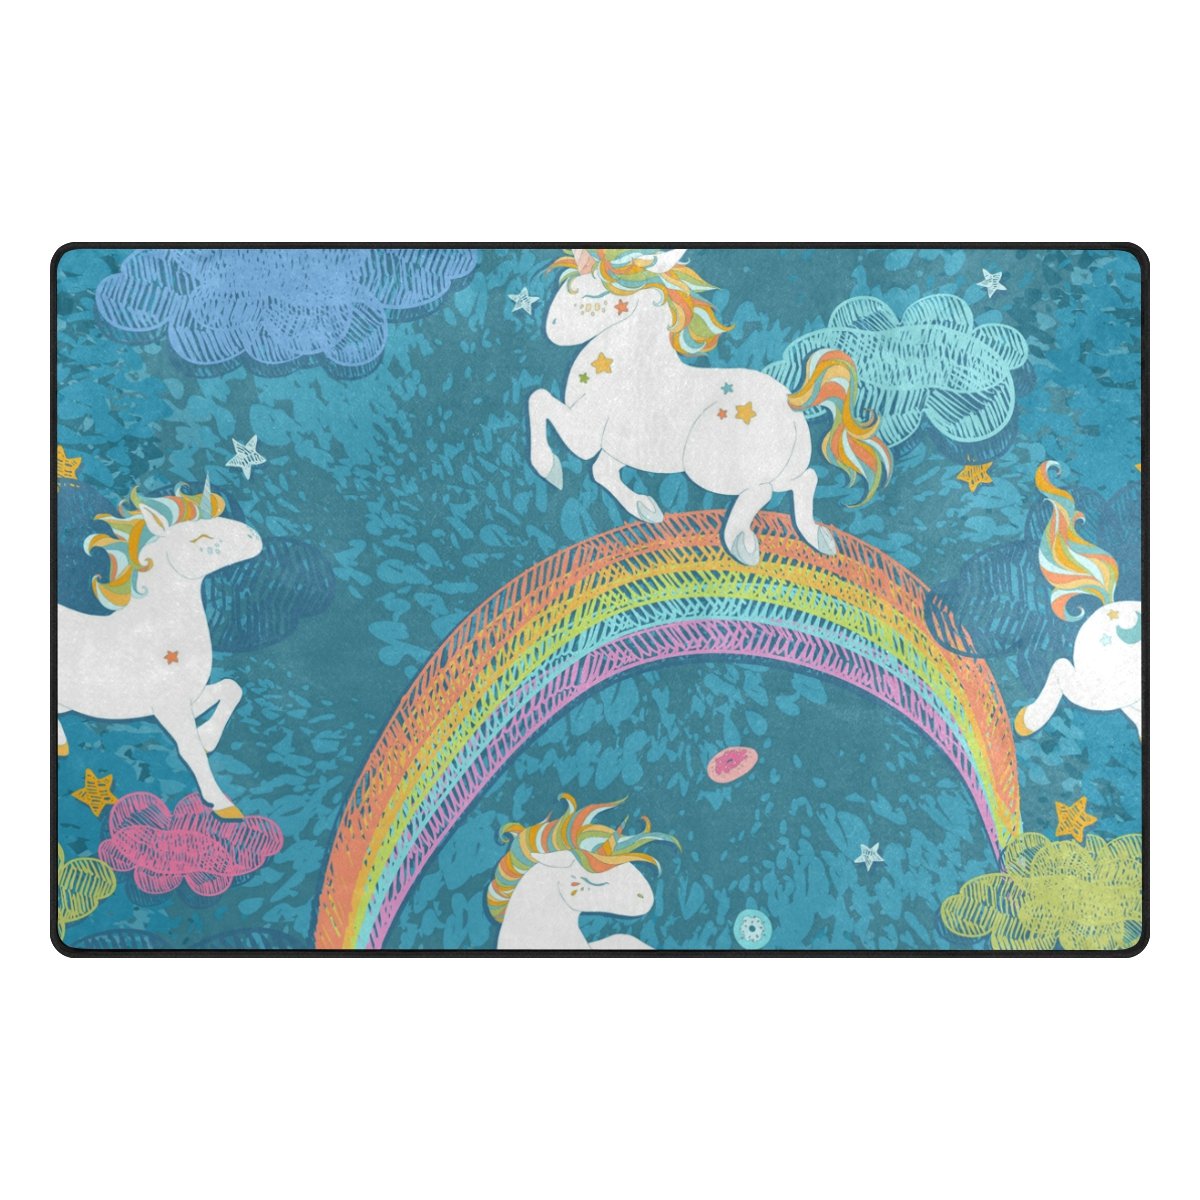 Large Unicorn Rainbow Rug For Kids Bedroom